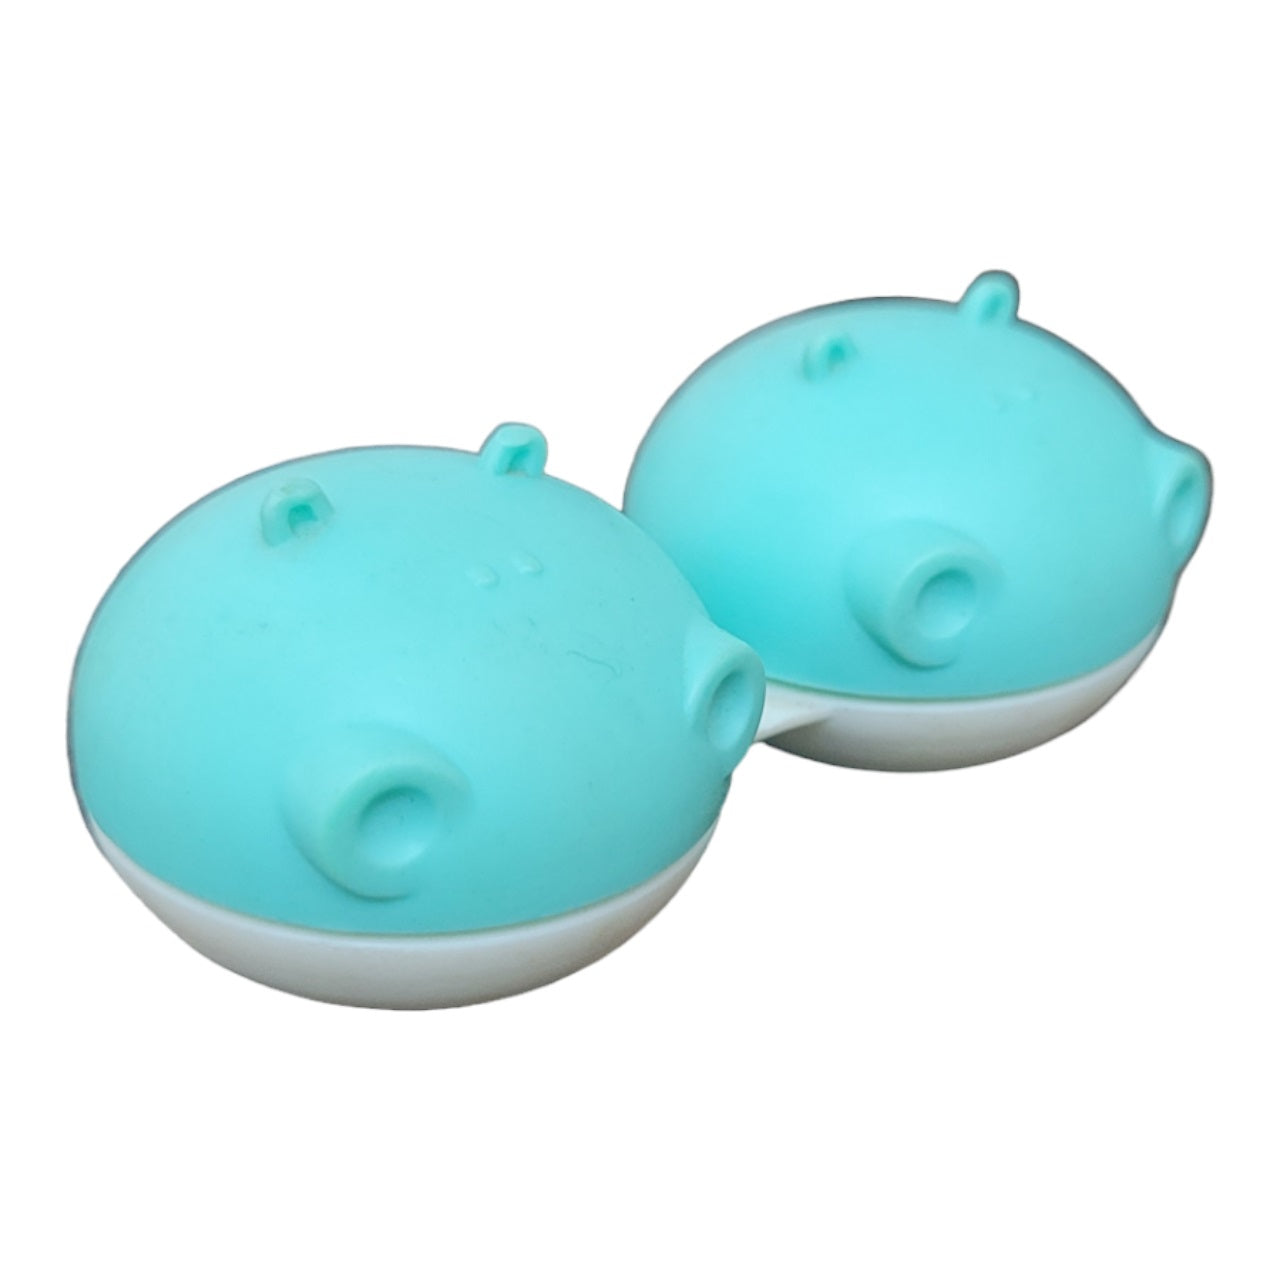 Hippo Contact Lens Case | Fancy Contact Lenses Case Aqua Color by Affaires Qcase-0049